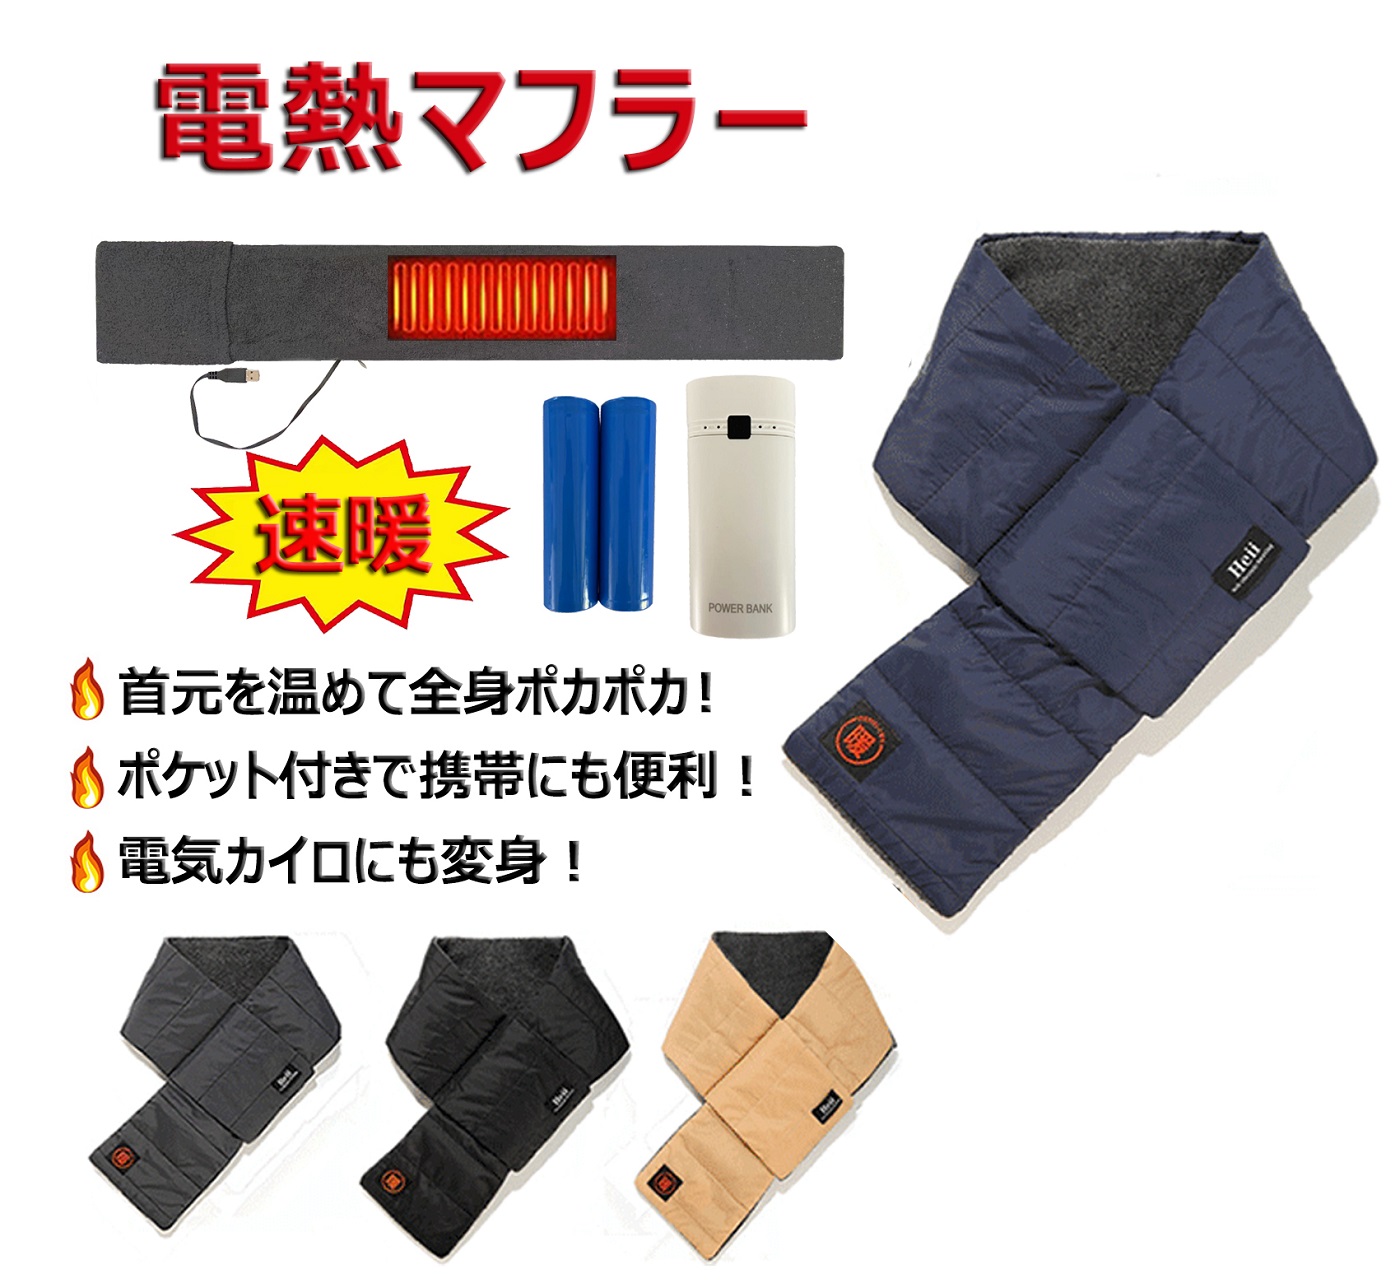 電熱マフラー 電池付き USB給電式 男女兼用 洗える 超軽量 通勤 コンパクト 電熱スカーフ ヒートマフラー